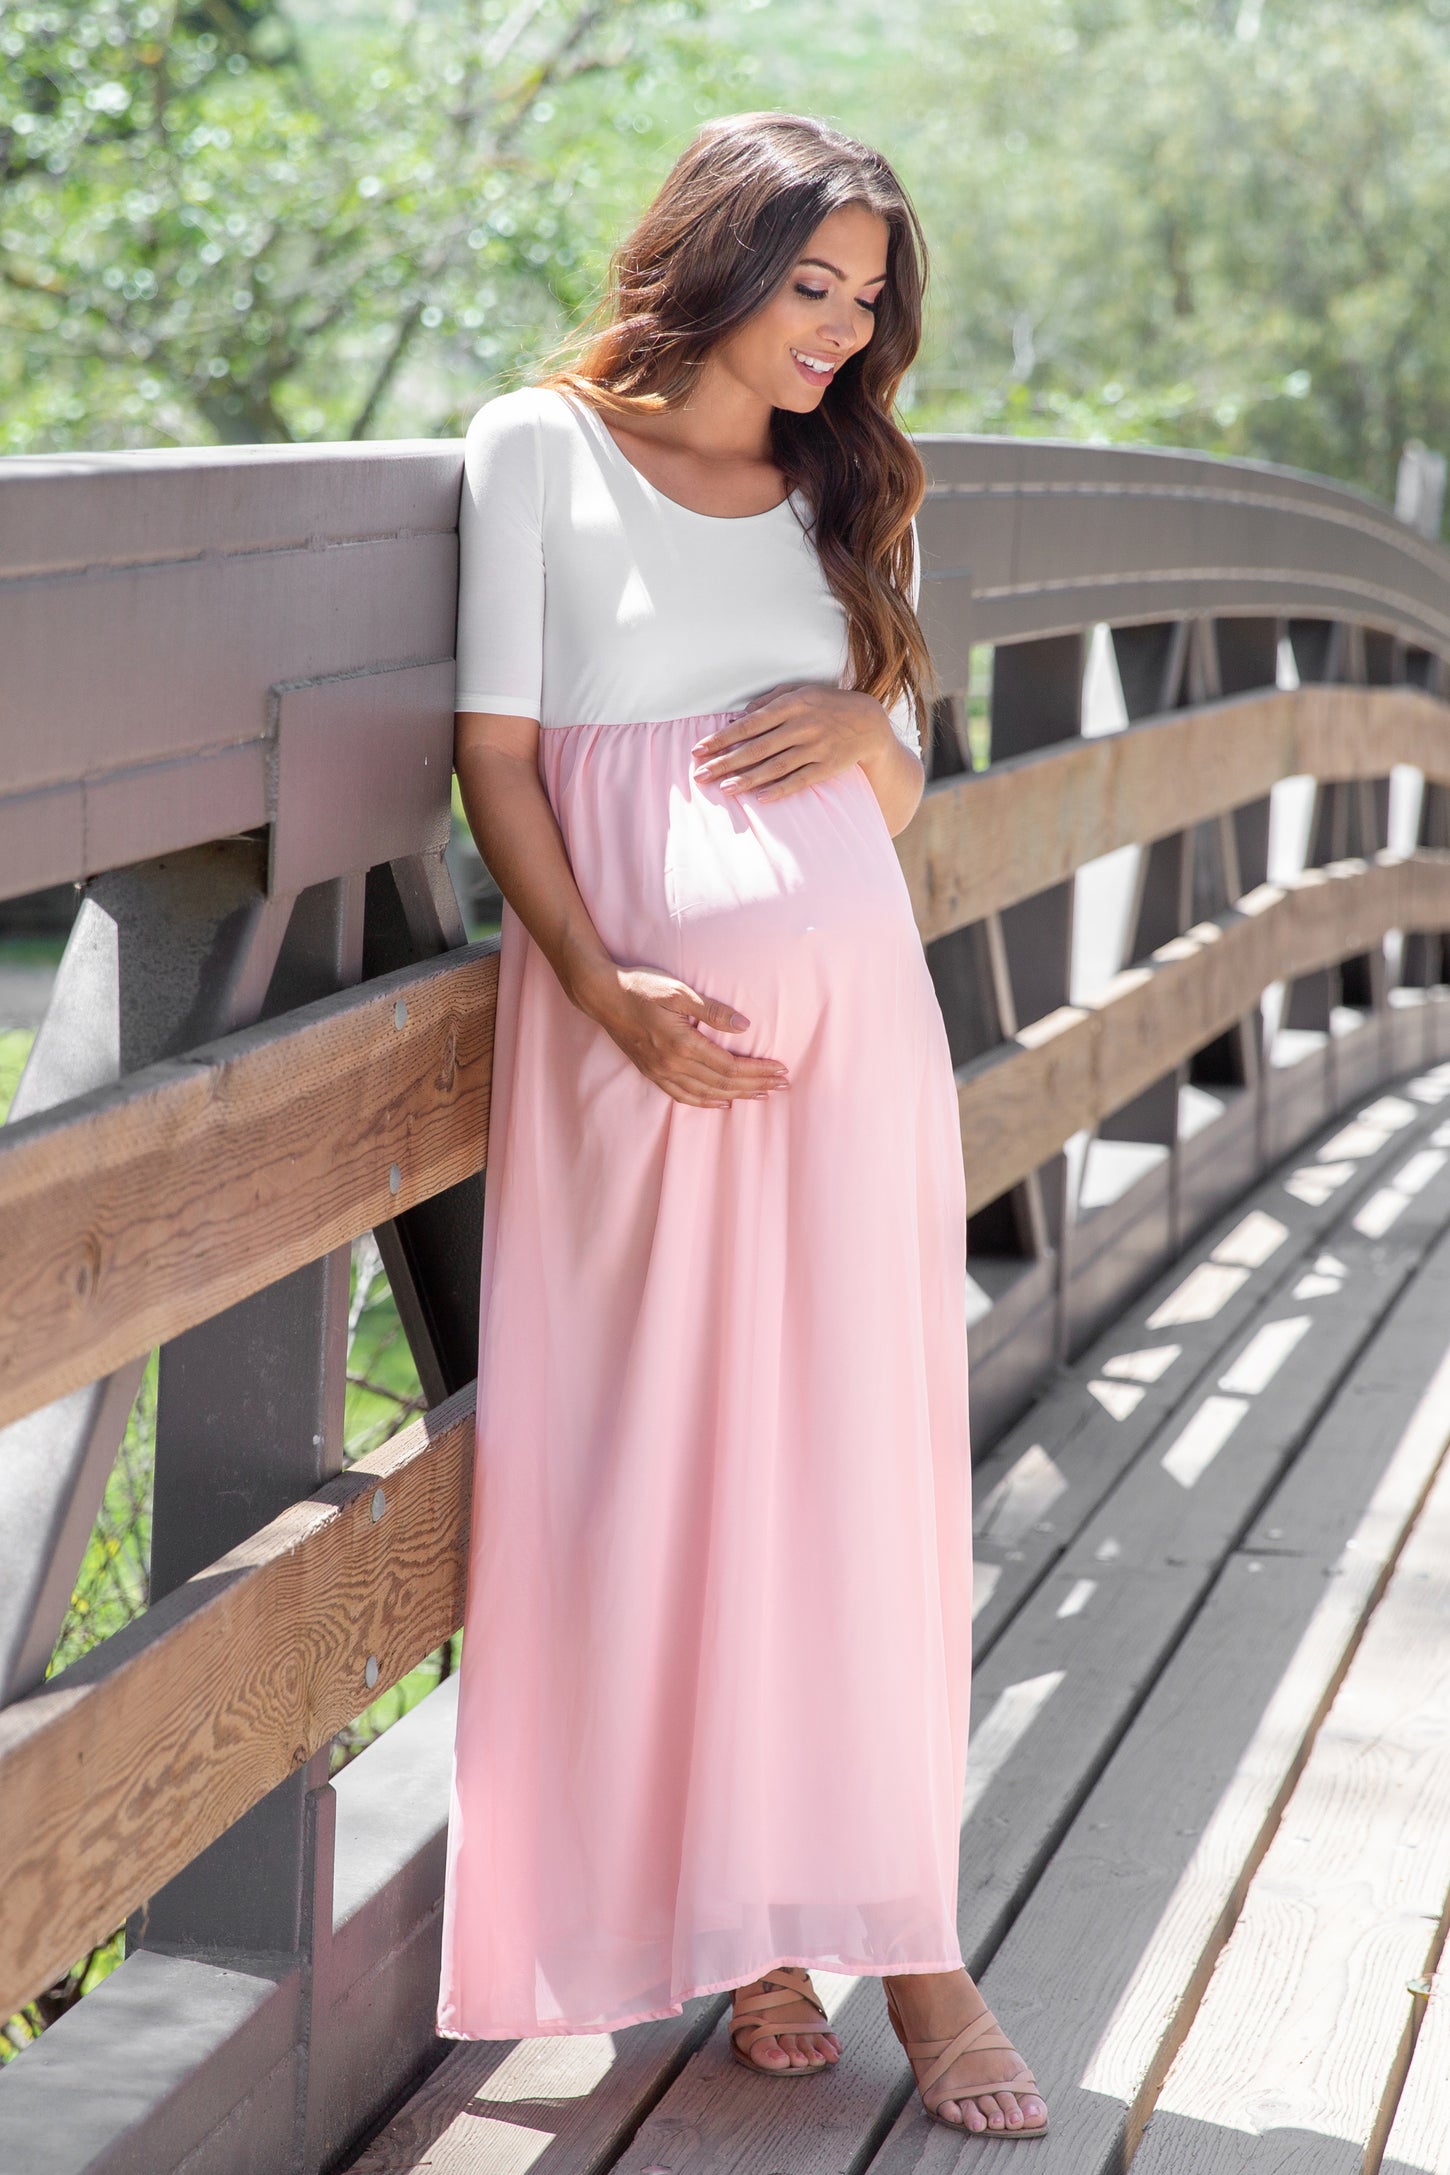 PinkBlush Petite Light Pink Chiffon Colorblock Maternity Maxi Dress